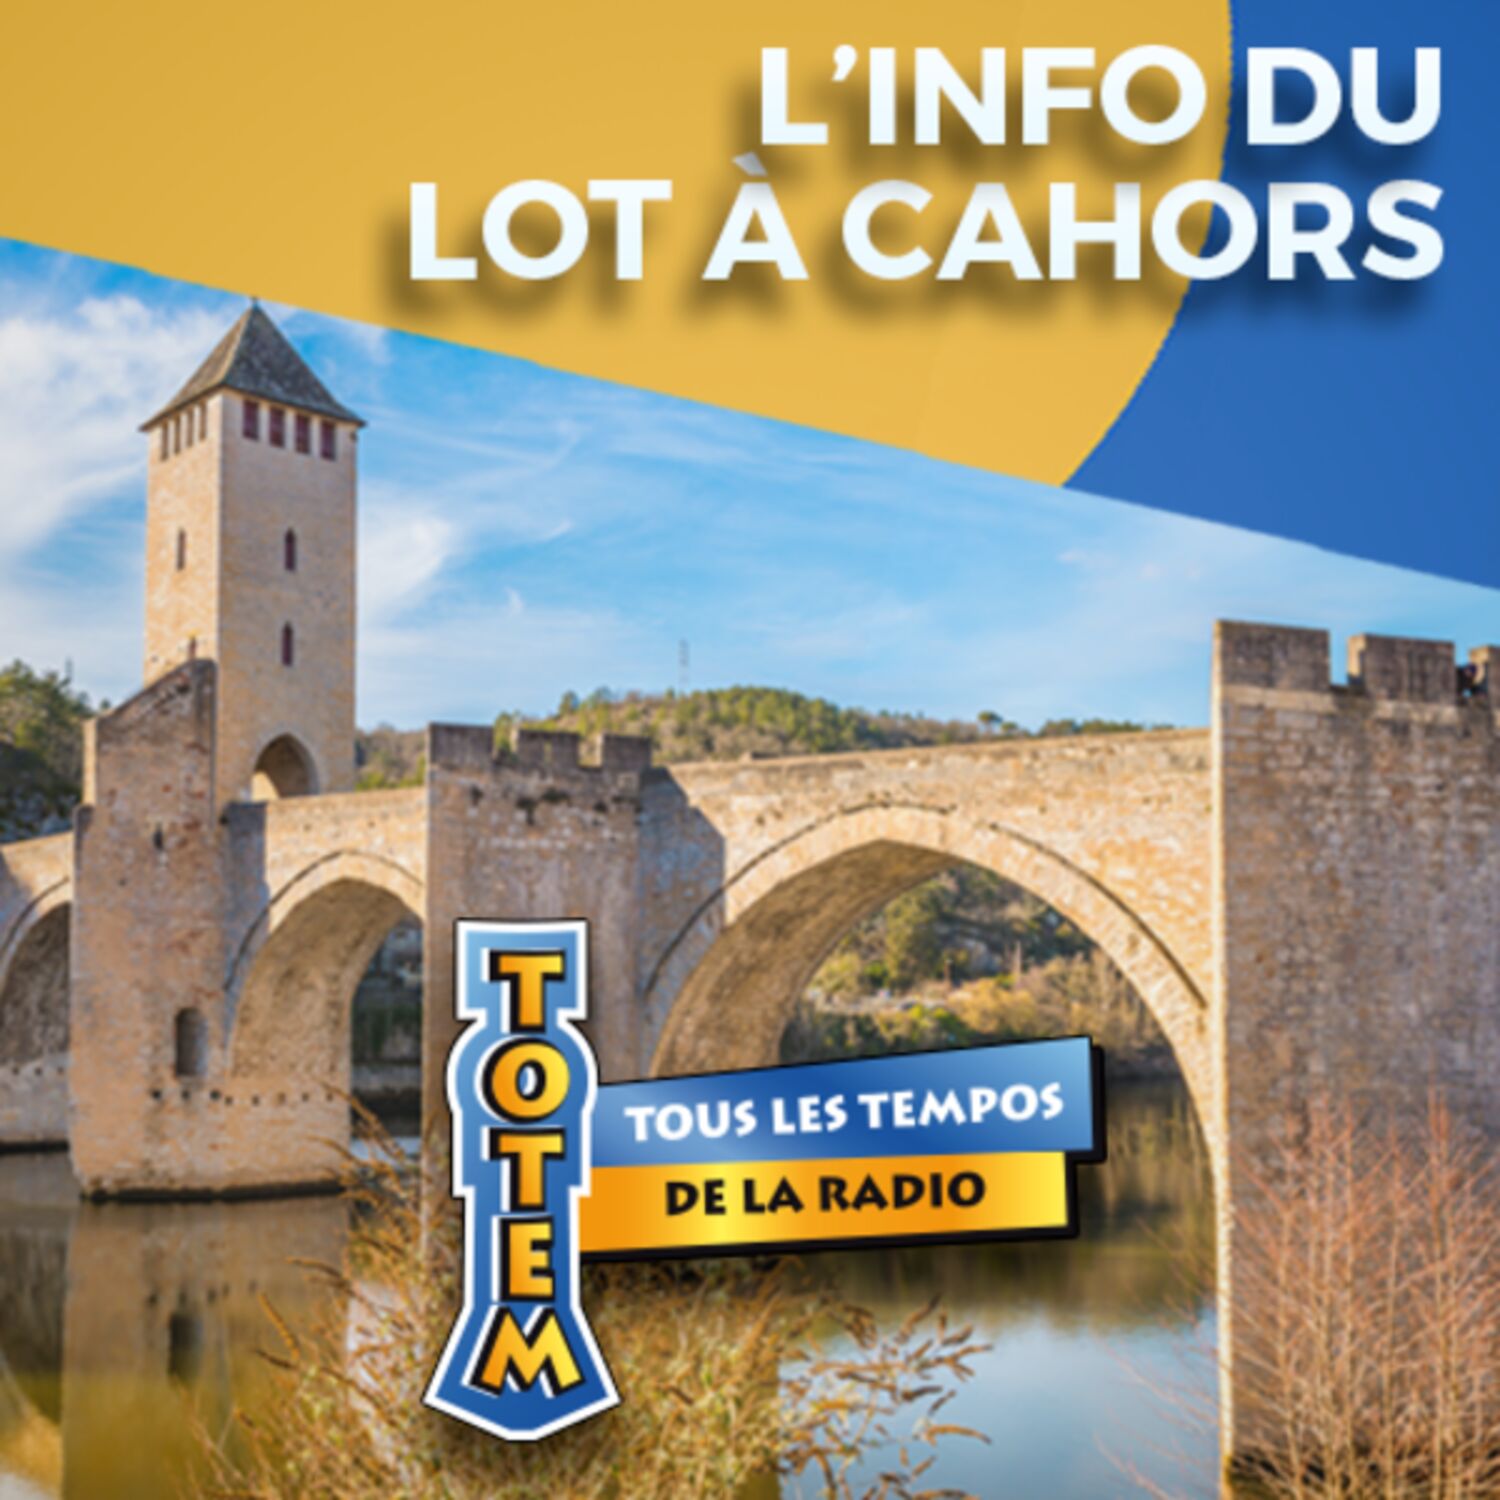 L'info du Lot à Cahors du 03/04/23 à 17h59